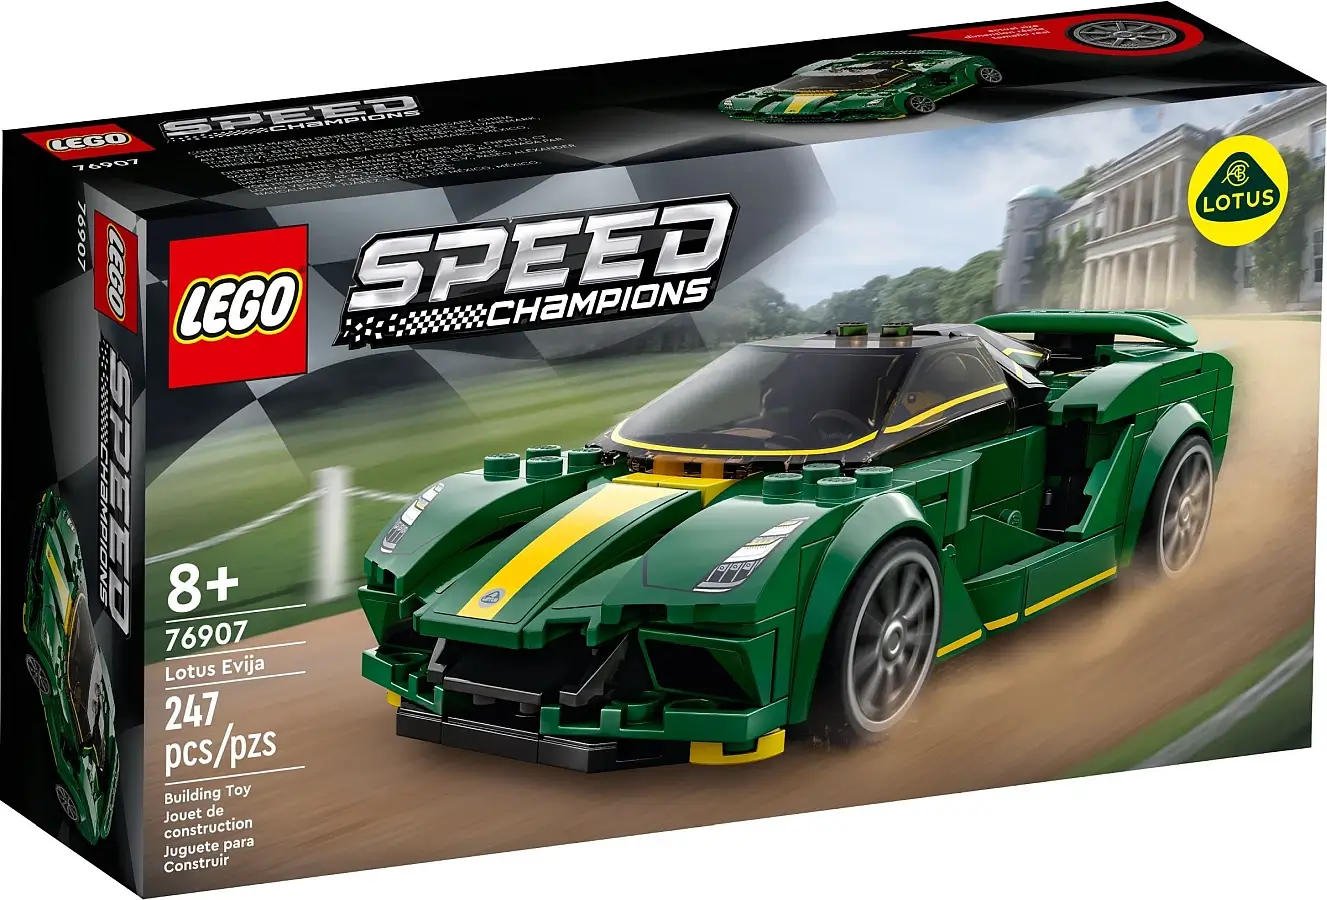 Pudełko zestawu 76907 z serii LEGO® Speed Champions – Lotus Evija